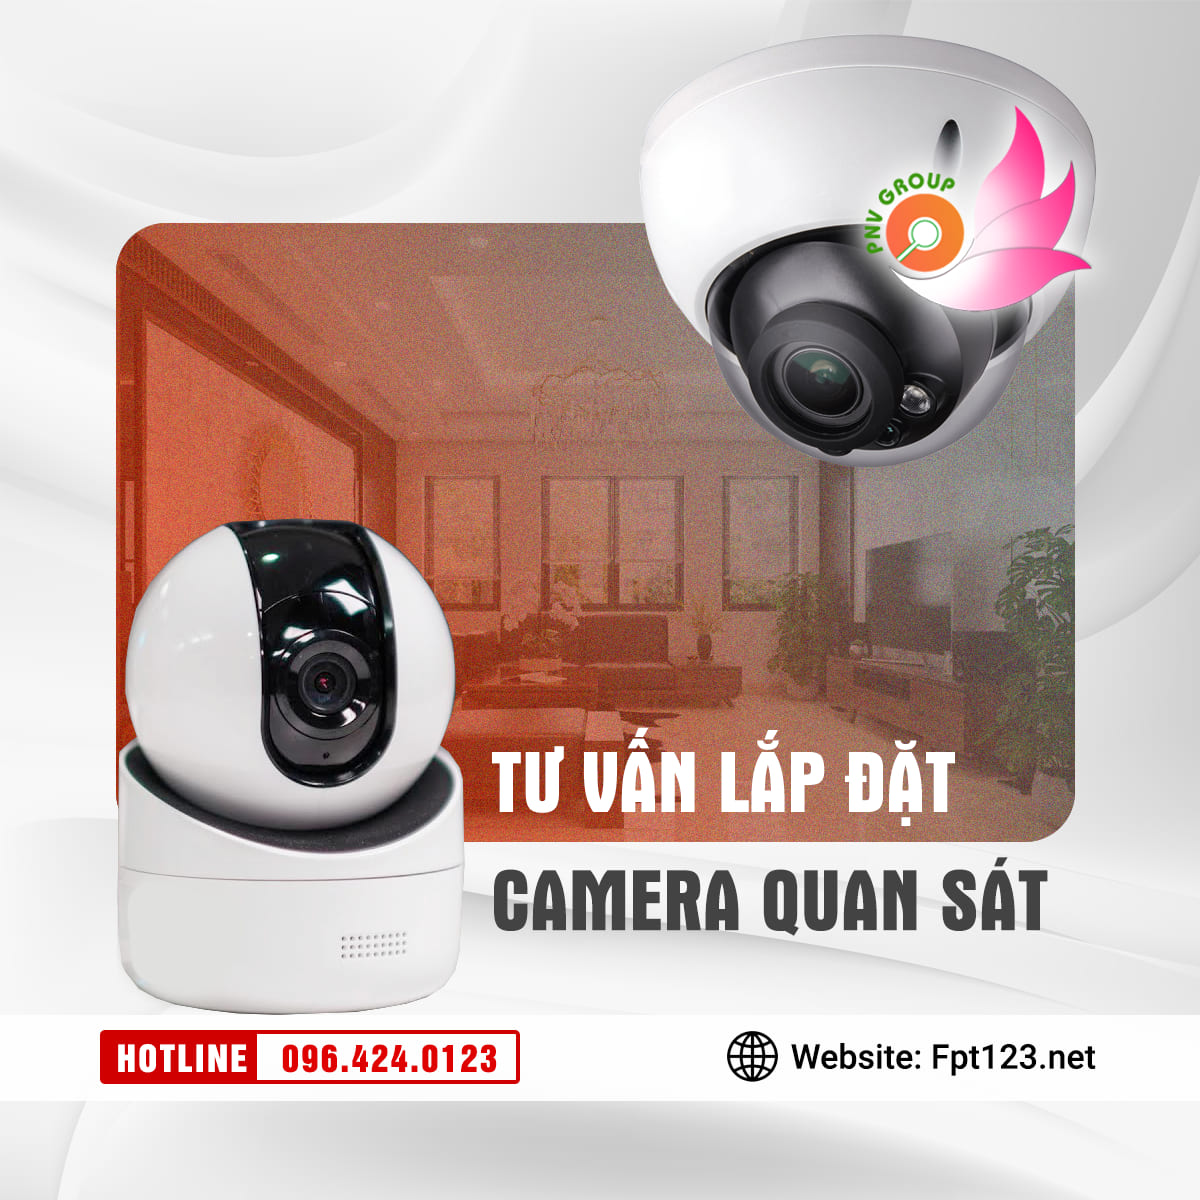 Dịch vụ lắp đặt camera quan sát tại Ninh Thuận